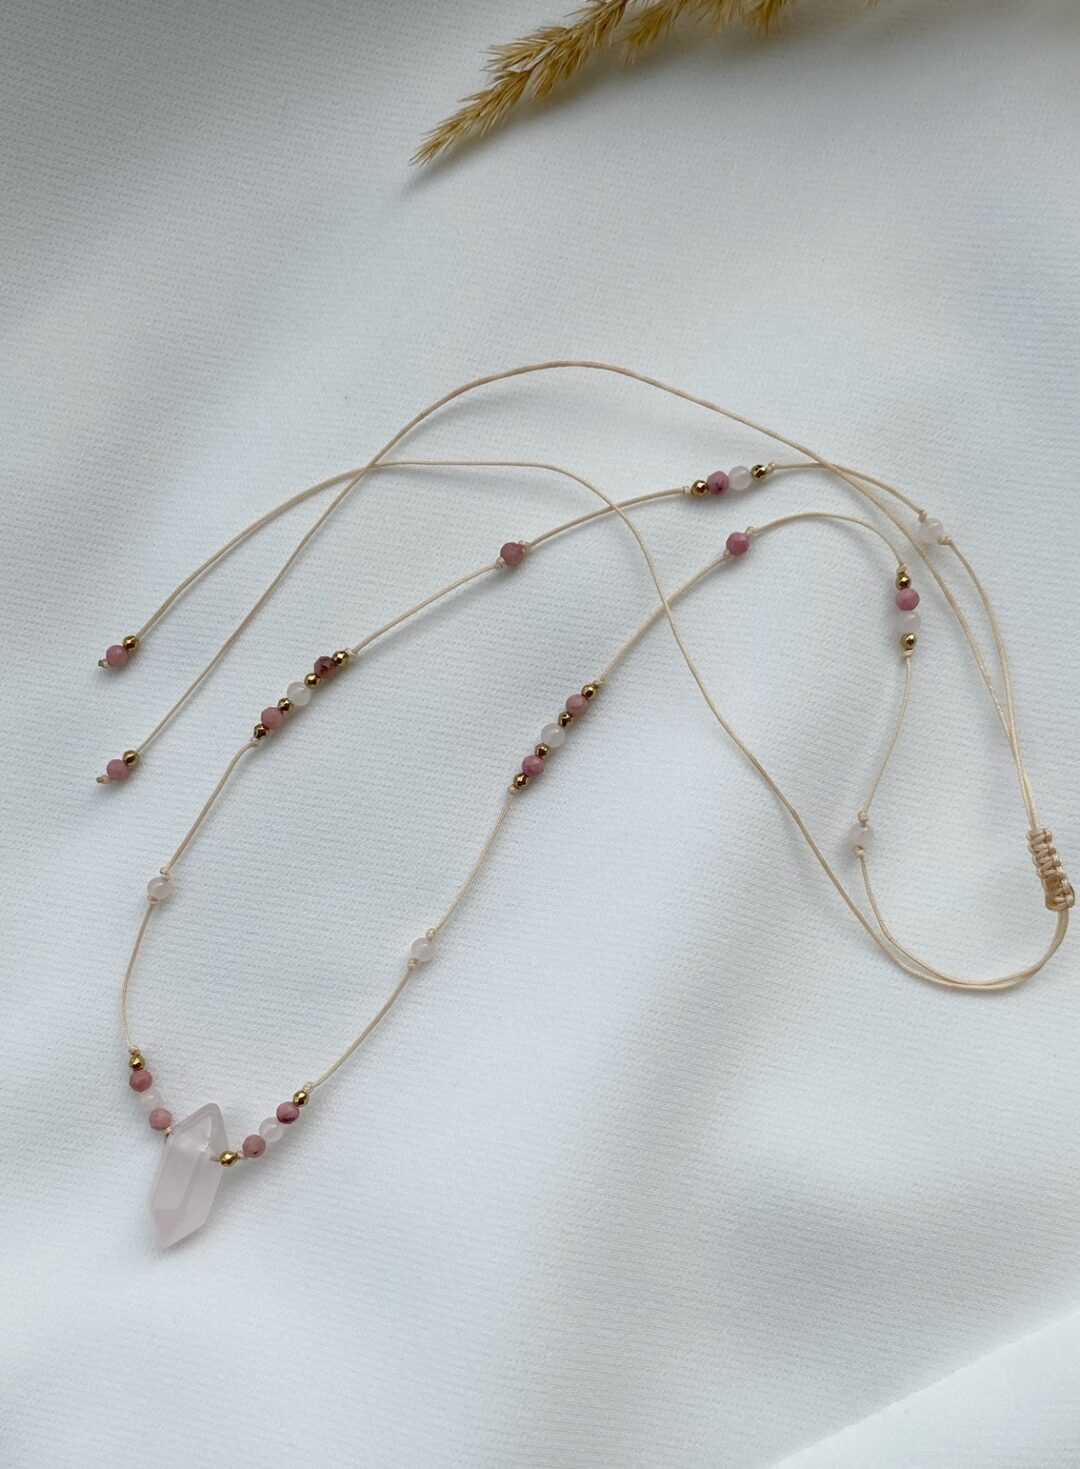 Naszyjnik z Kwarcem Różowym i Rodonitem - Subtelna biżuteria dla eleganckiego wyglądu